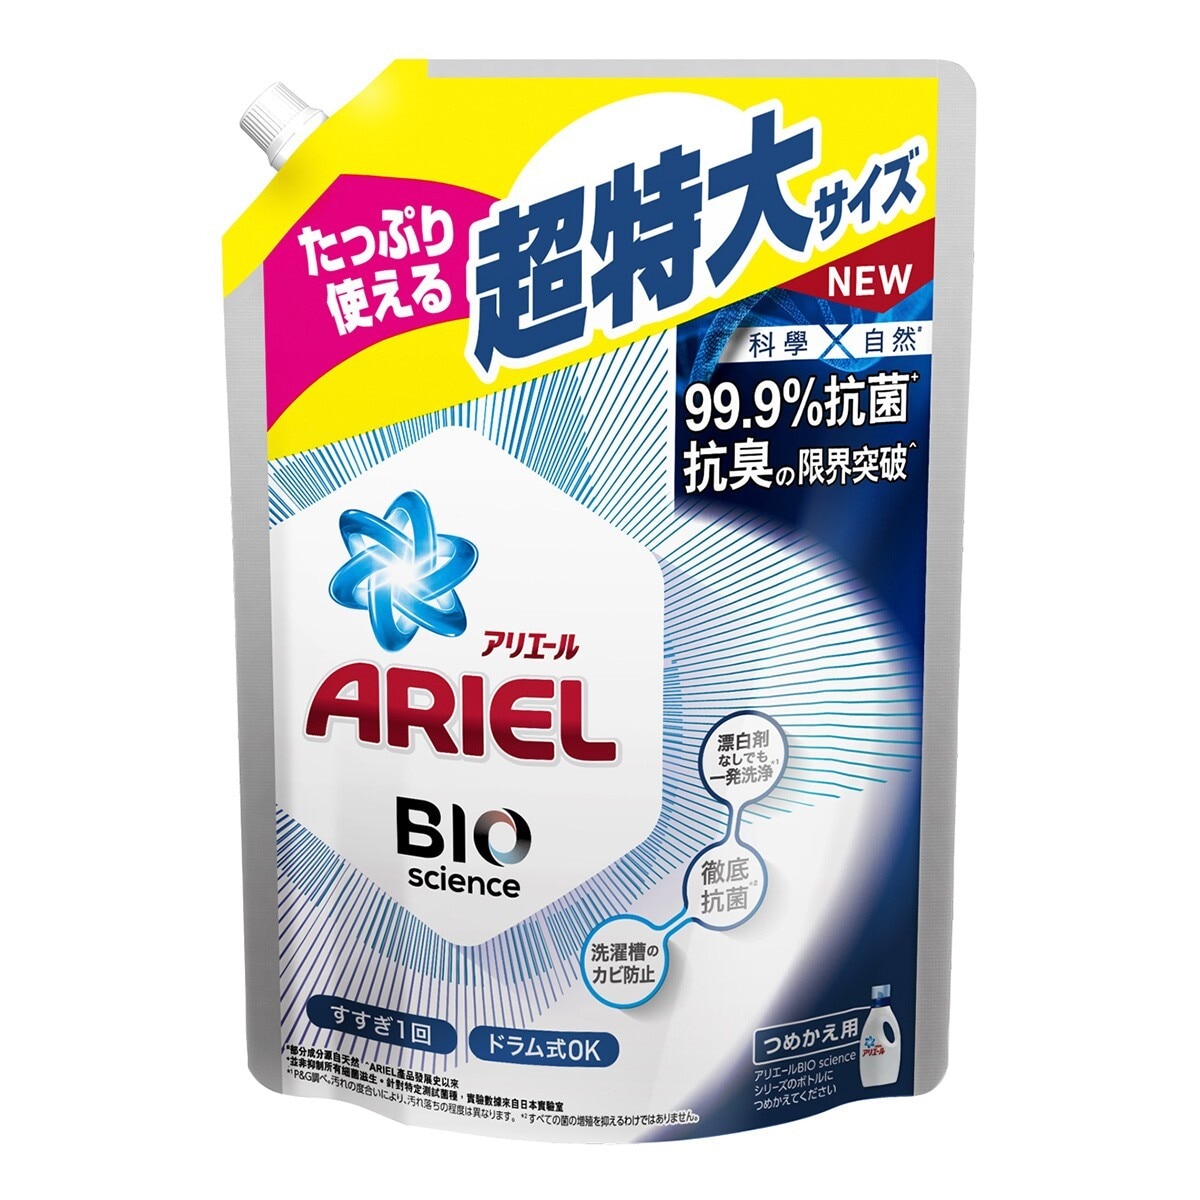 Ariel 抗菌抗臭洗衣精補充包 1260公克 X 6入